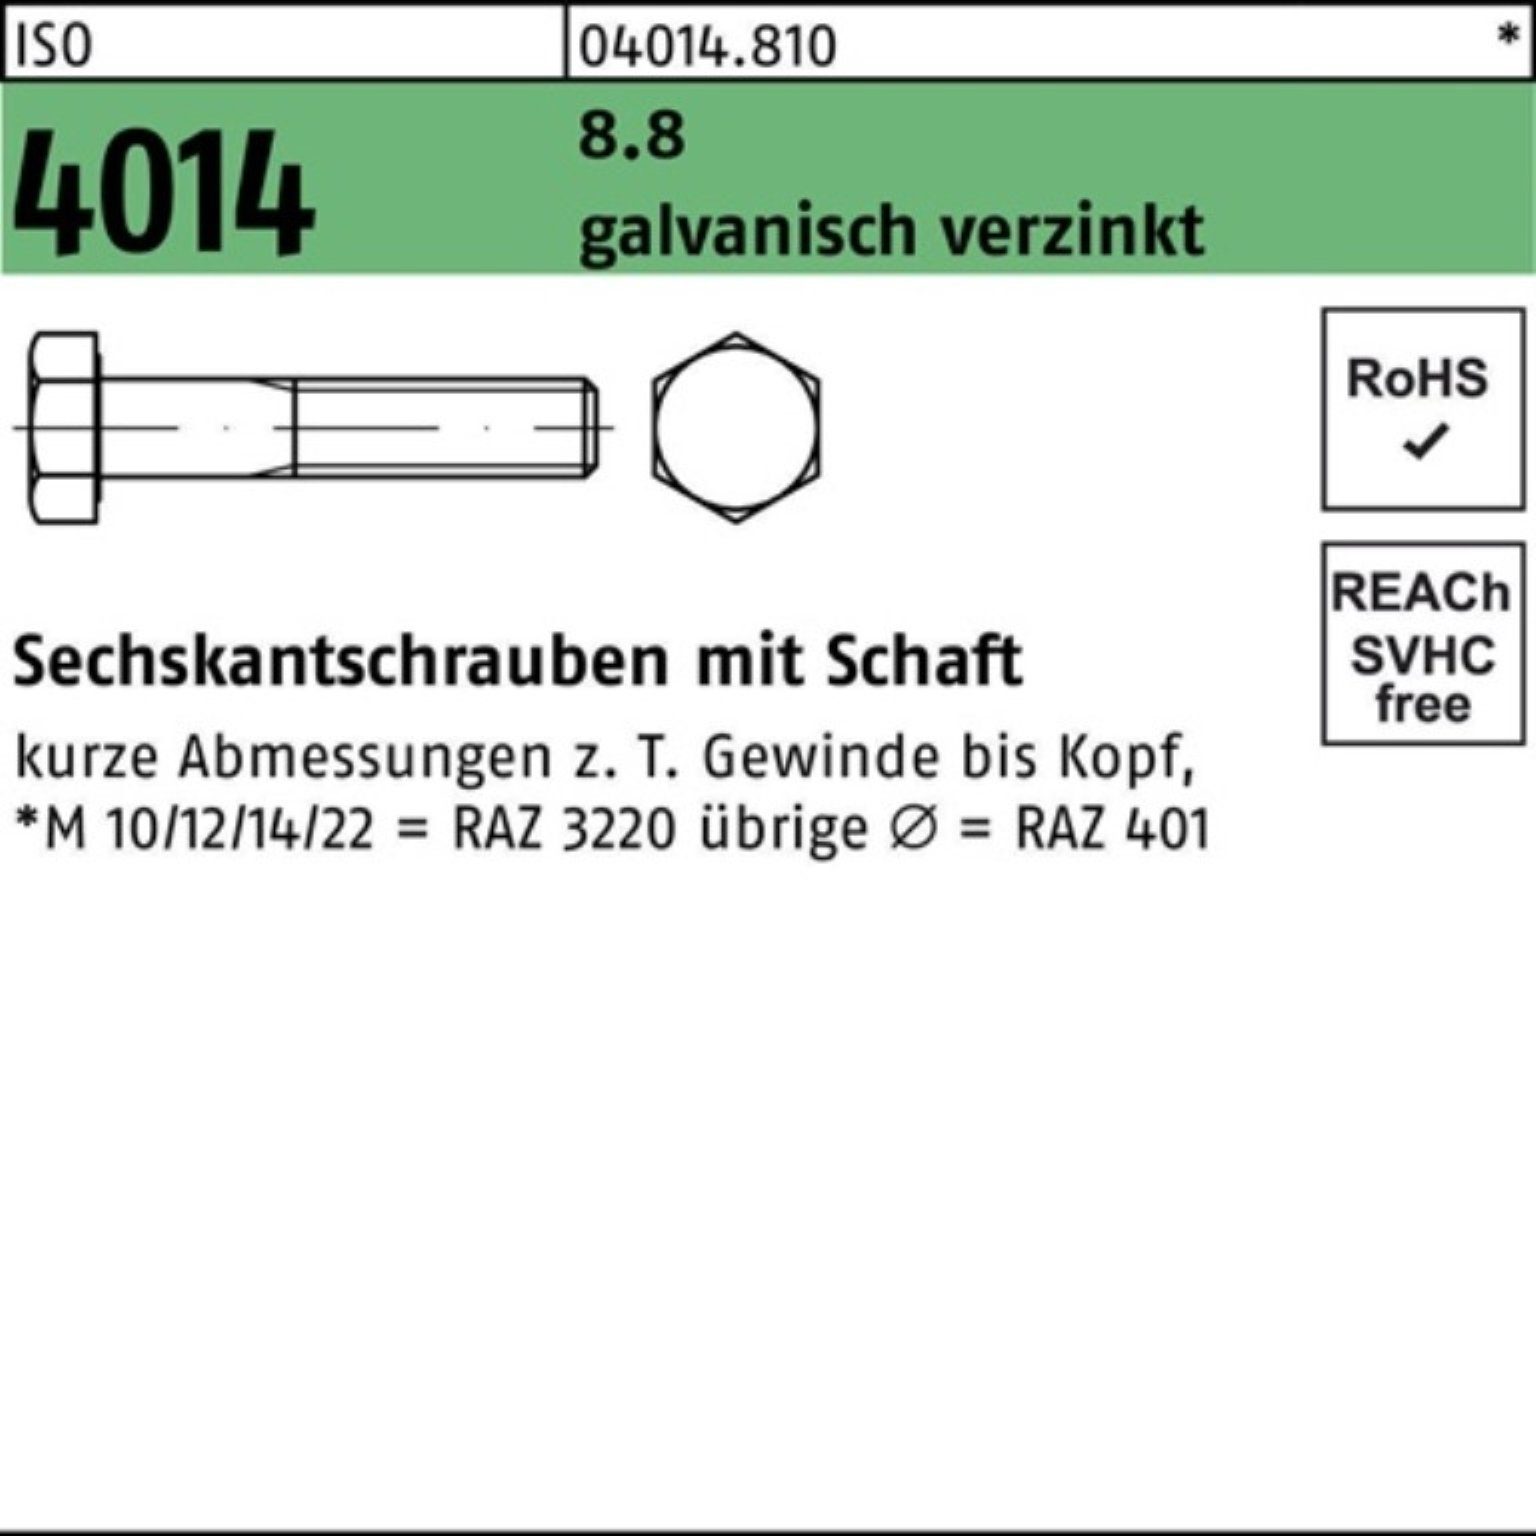 Schaft Sechskantschraube Bufab 10 galv.verz. ISO 135 Pack M8x 100er 4014 Sechskantschraube 8.8